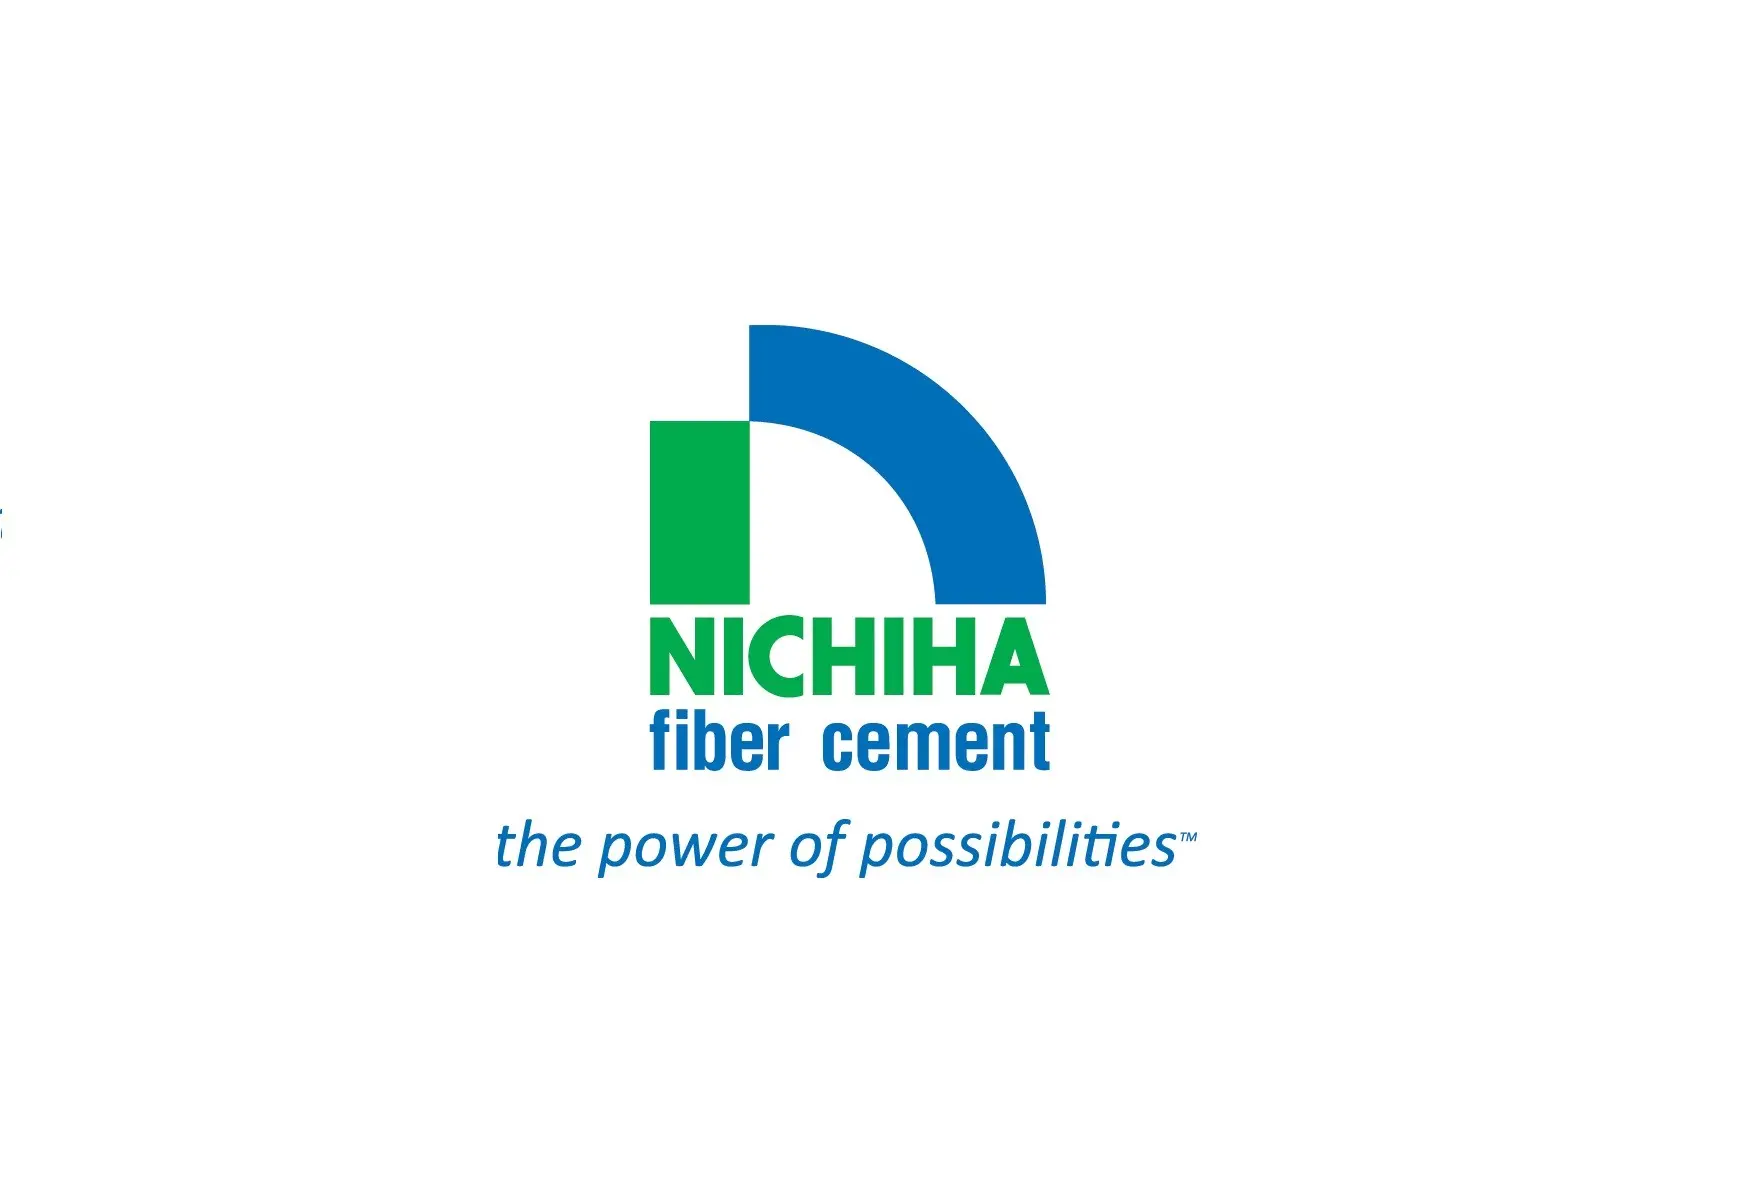 חברת ניצ'יאה Nichiha הביאה את בשורת הפייבר צמנט מסוג ניצ'יאה העשוי בטכנולוגיה חדשנית